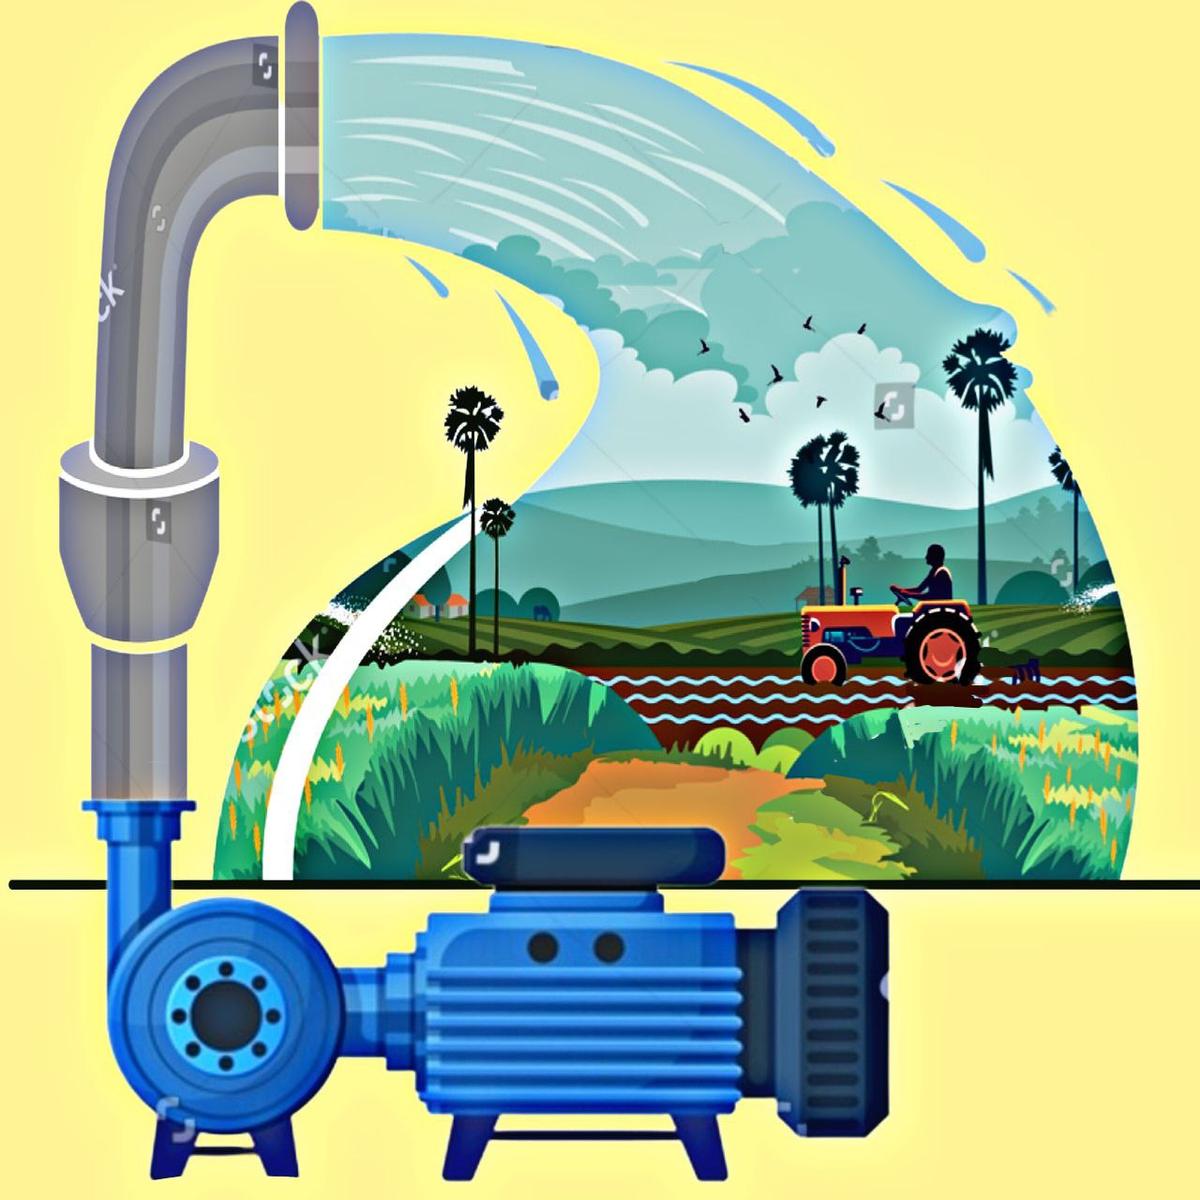 نکات مهم در انتخاب انواع پمپ آب کشاورزی